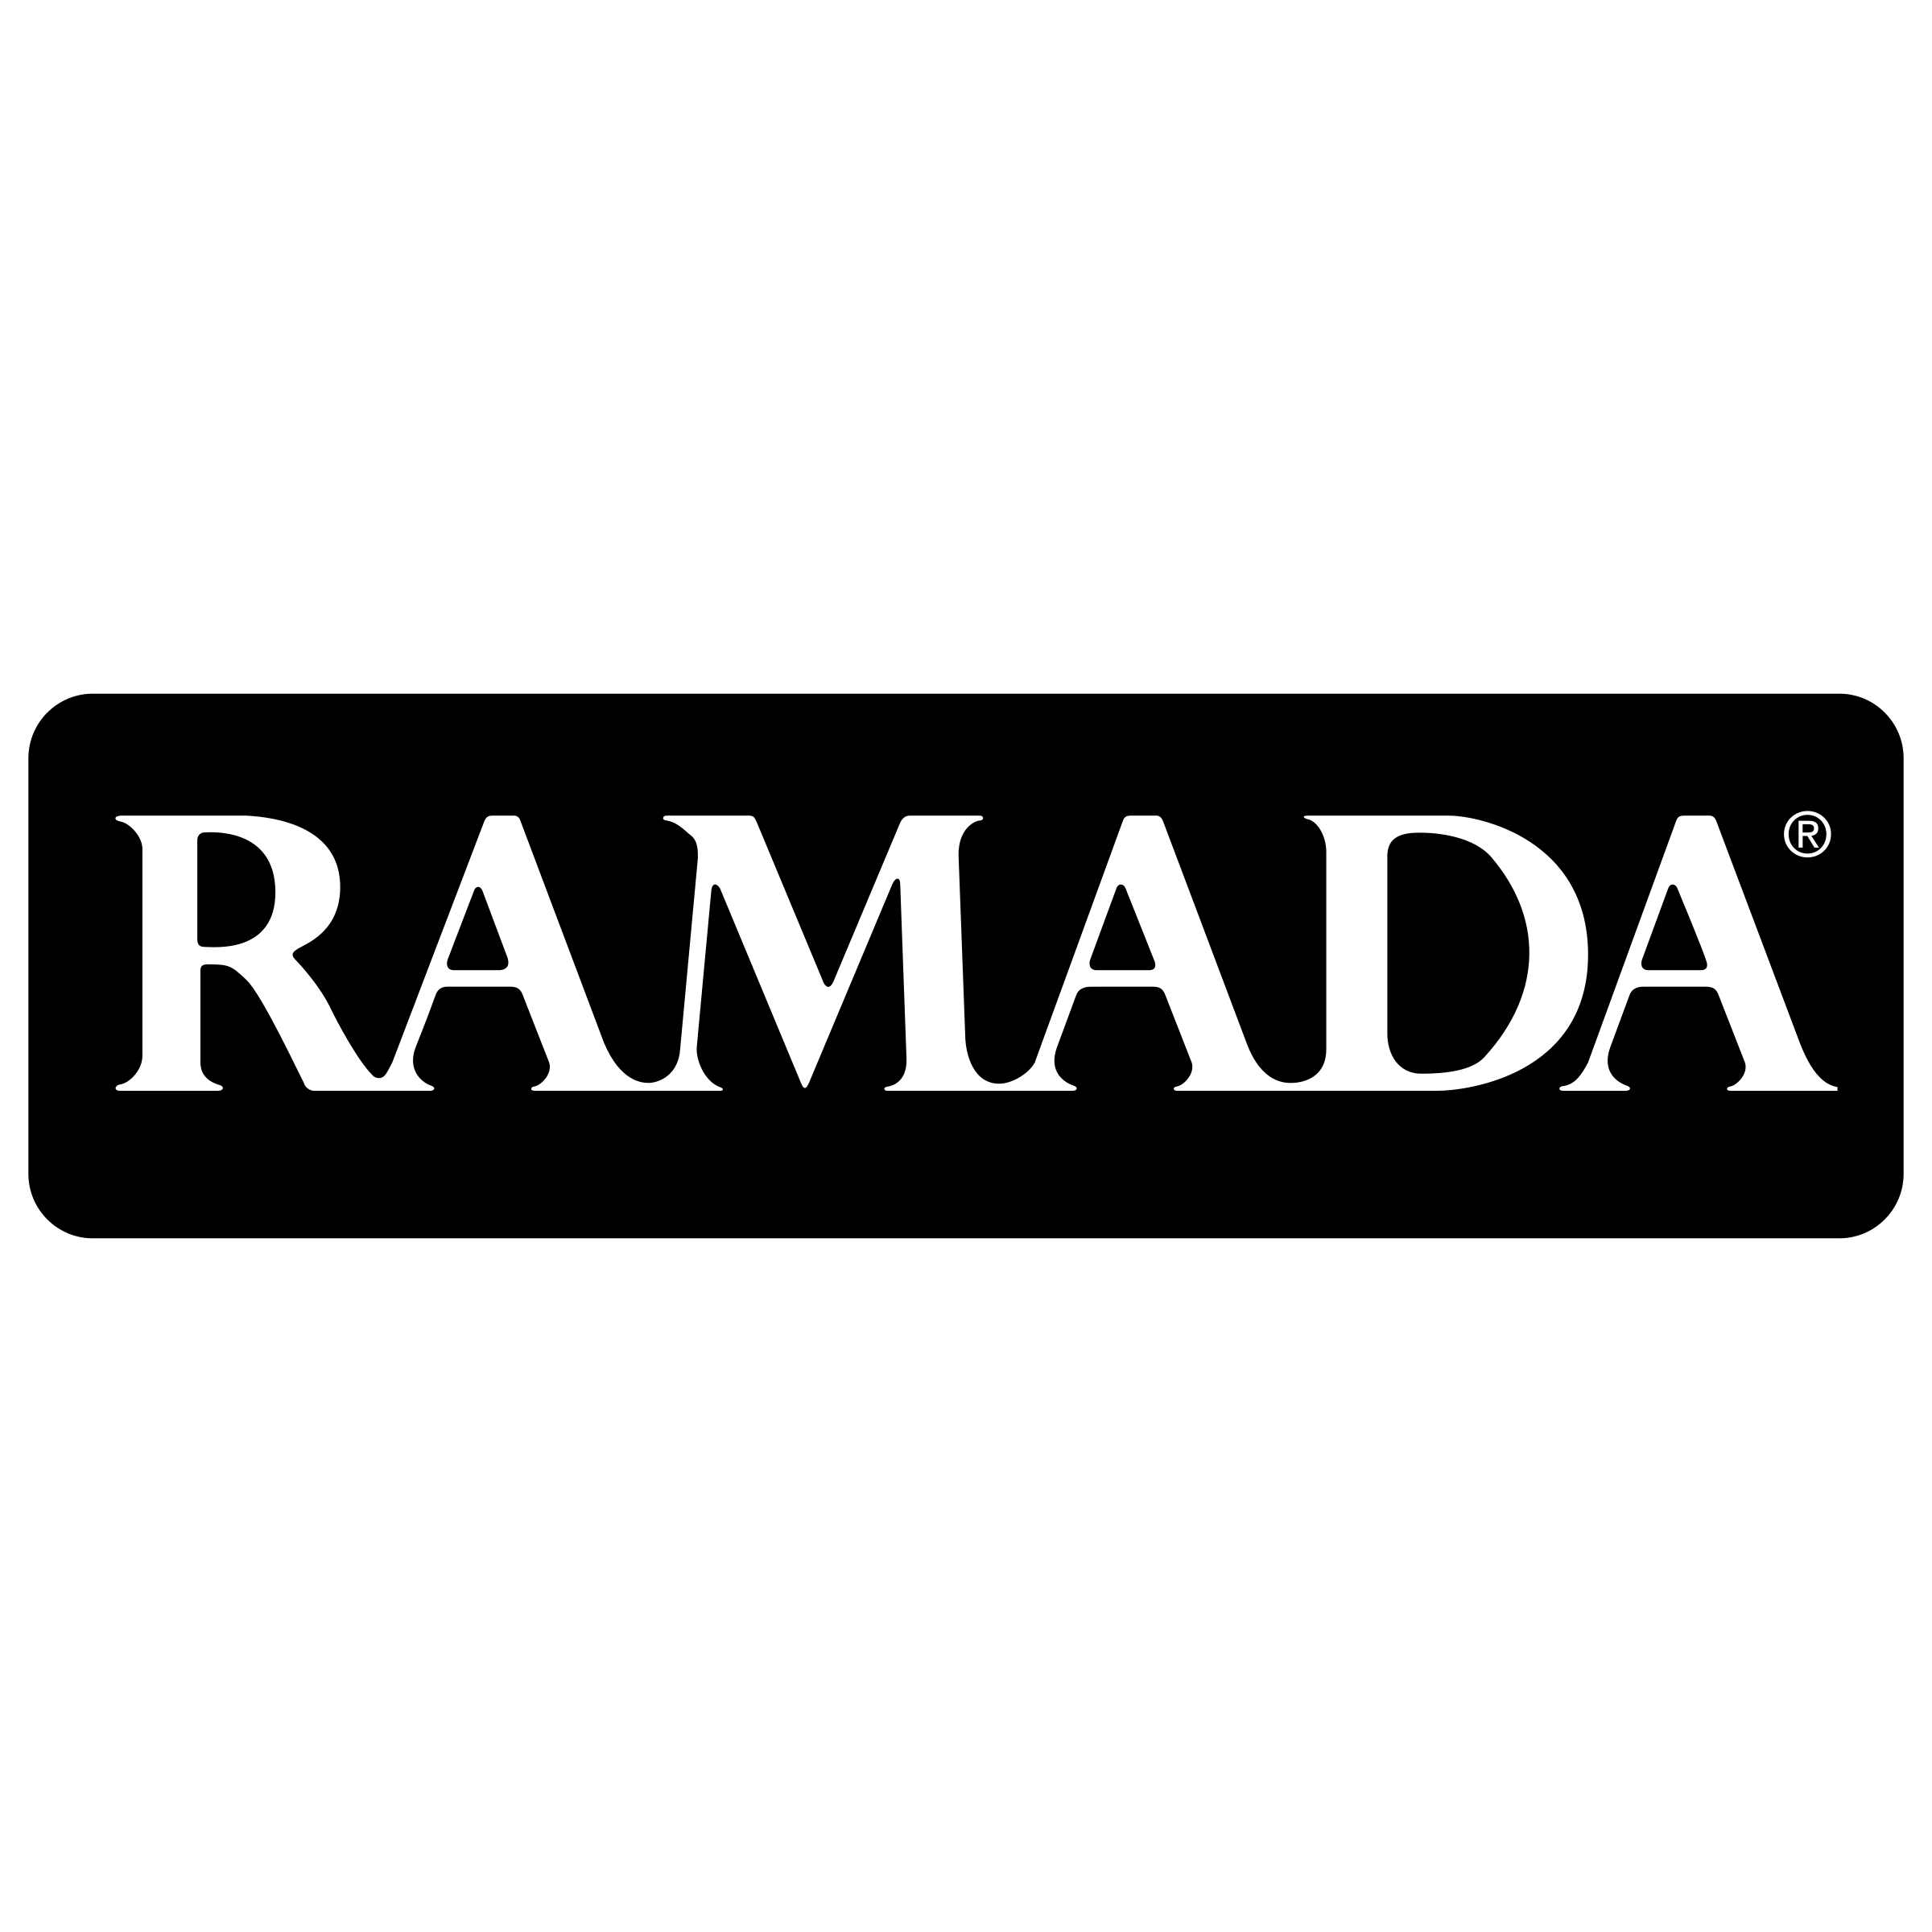 Ramada Logo - Ramada Logo PNG Transparent & SVG Vector - Freebie Supply